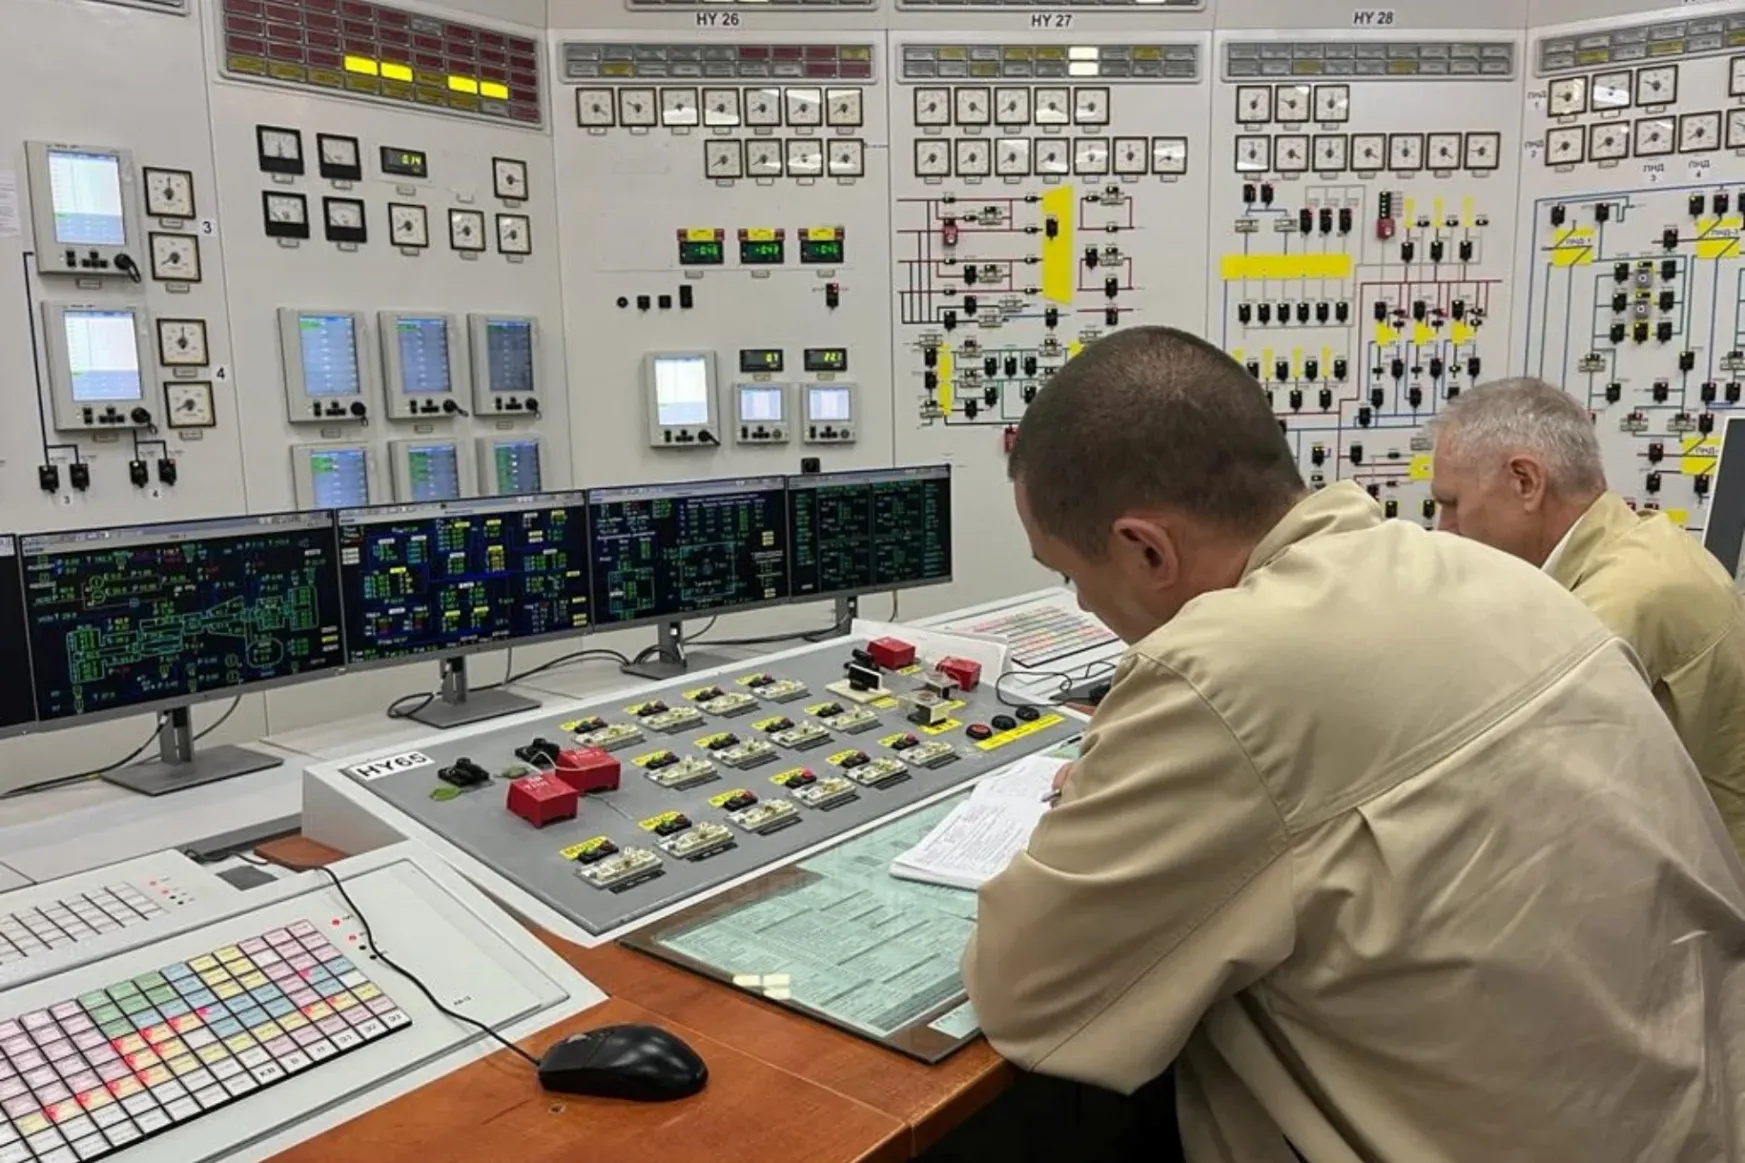 Leállt a zaporizzsjai atomerőmű utolsó fő távvezetéke az ENSZ megfigyelői szerint